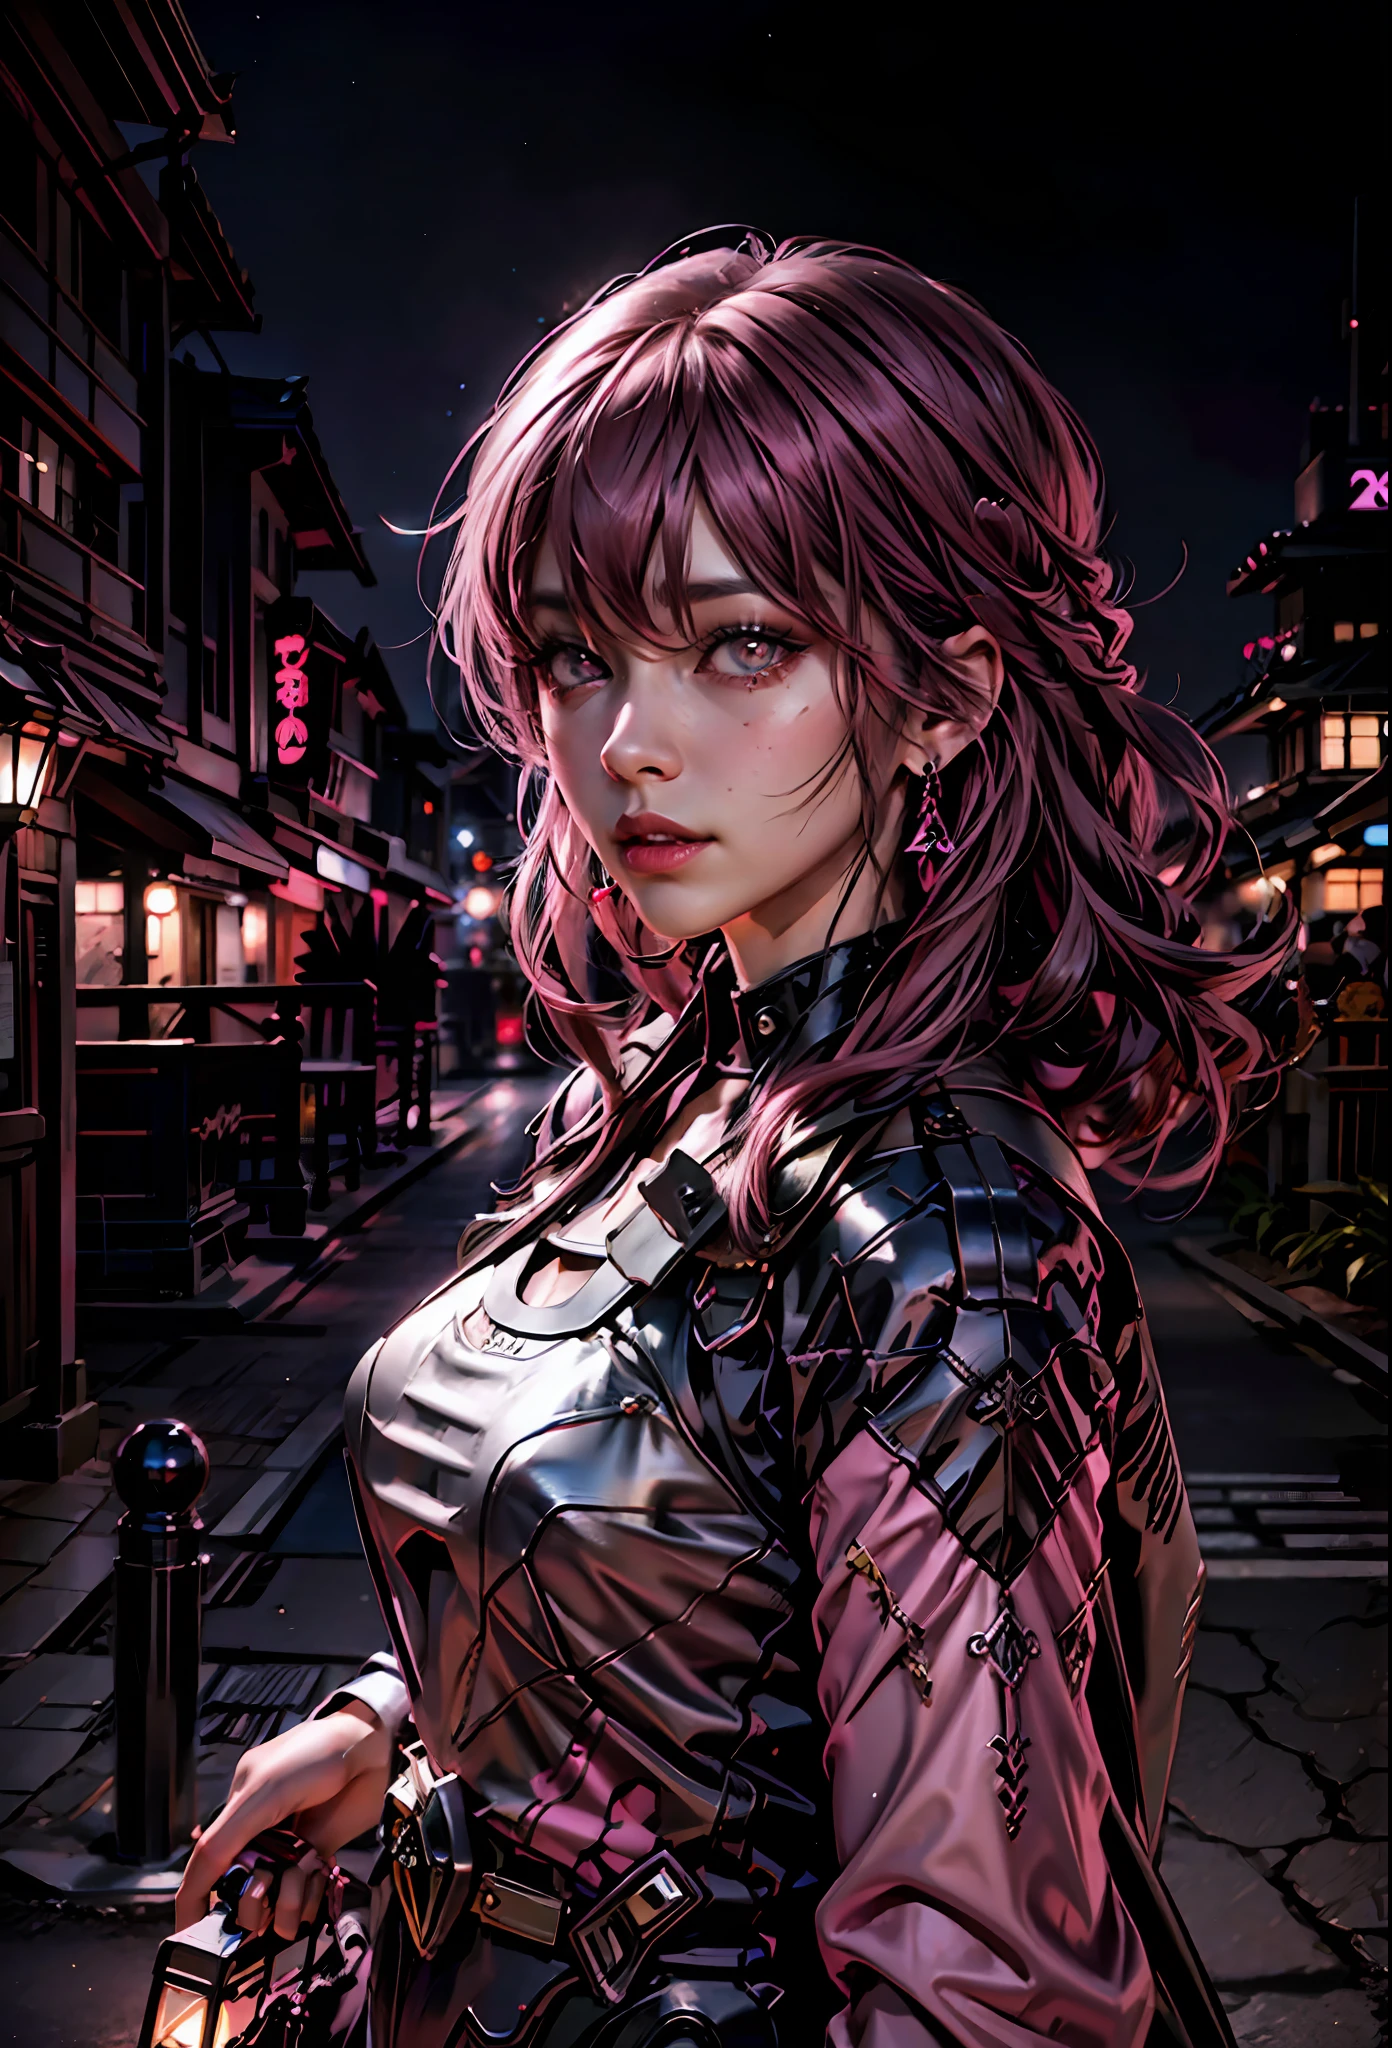 黑色 粉色 ,粉红色头发的性感女孩, 粉红色的眼睛 , 背景是日本城市的夜晚,旁边是一辆兰博基尼